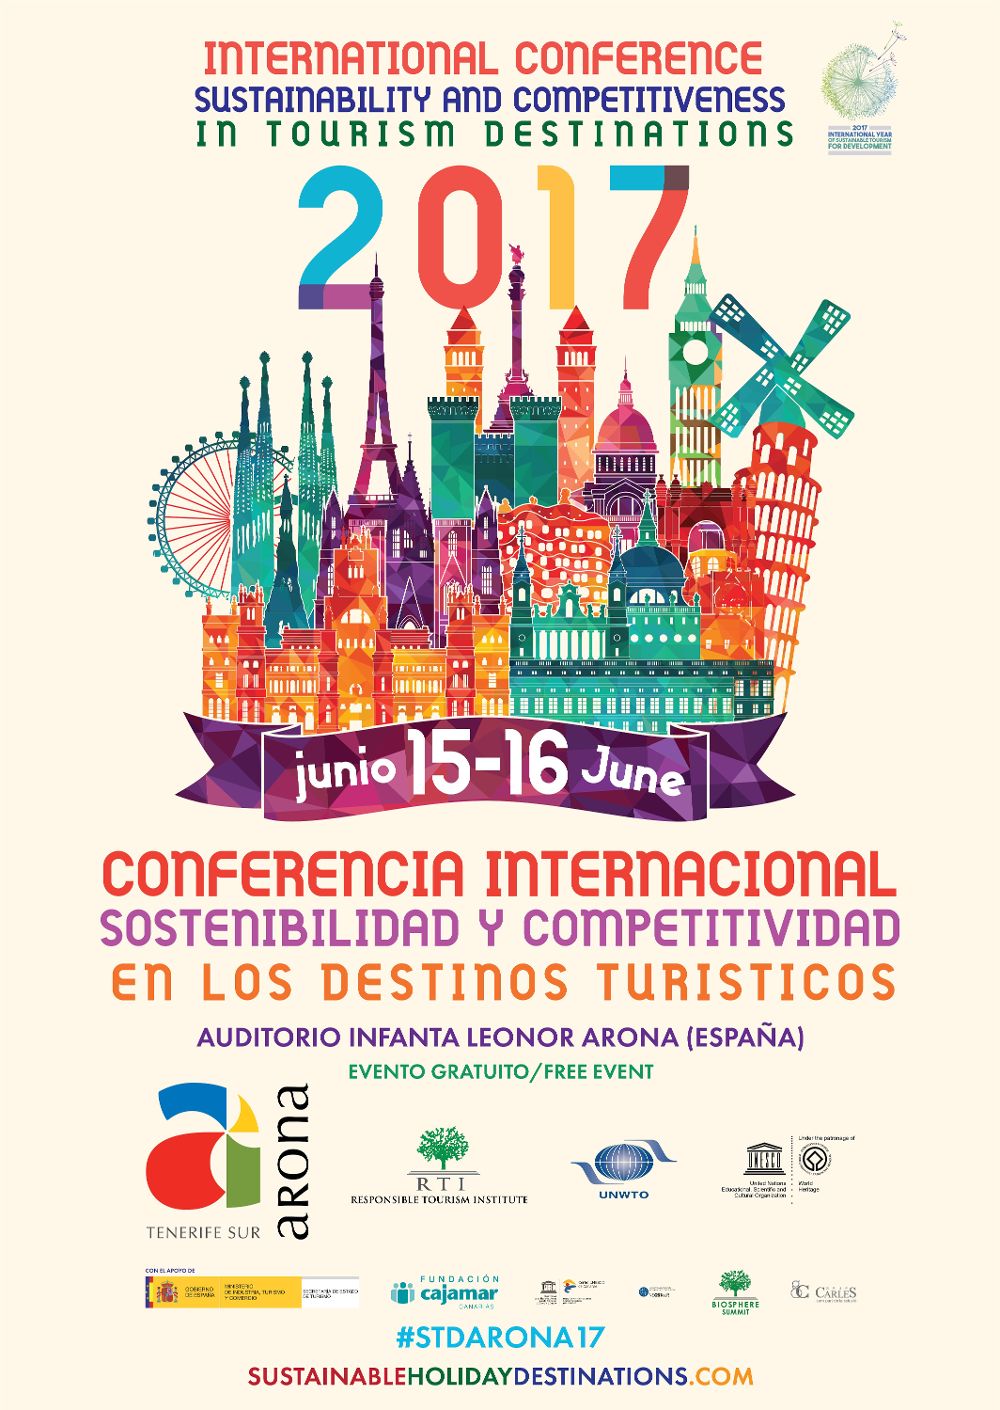 Cartel anunciador de la conferencia internacional.